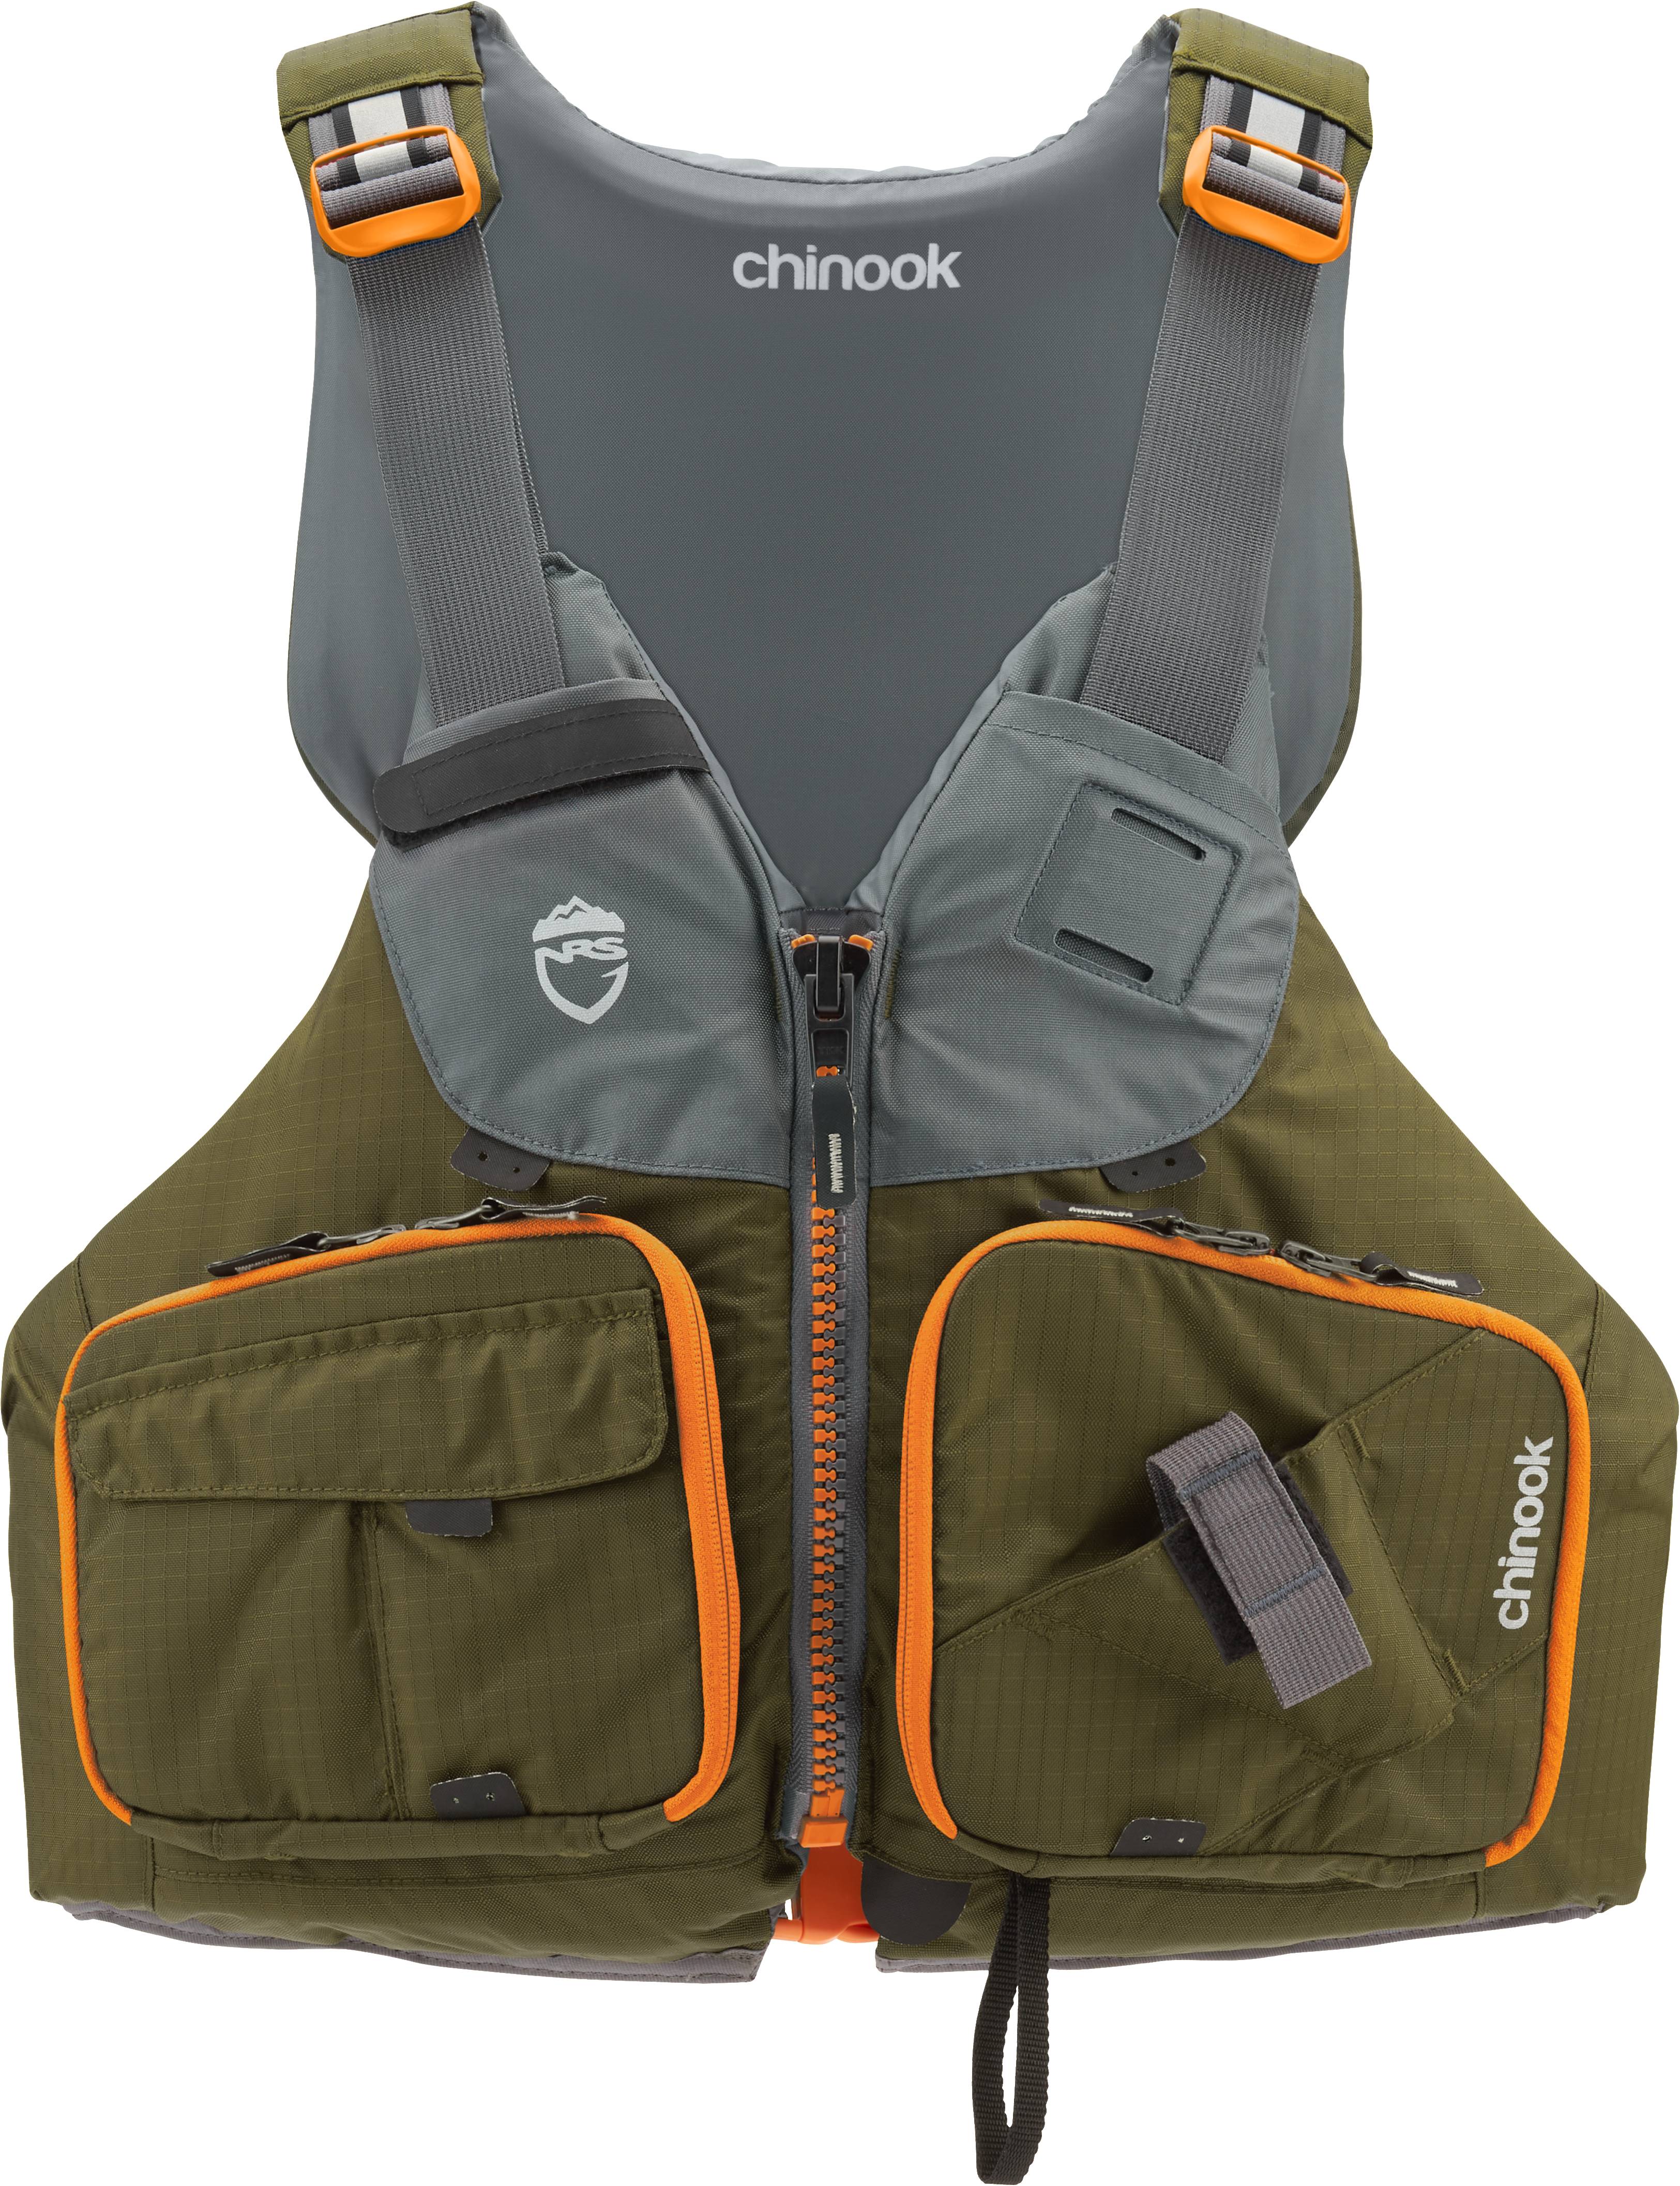 Fishing PFDs - Kayak, Inflatable, Vests & More [Kayak Angler